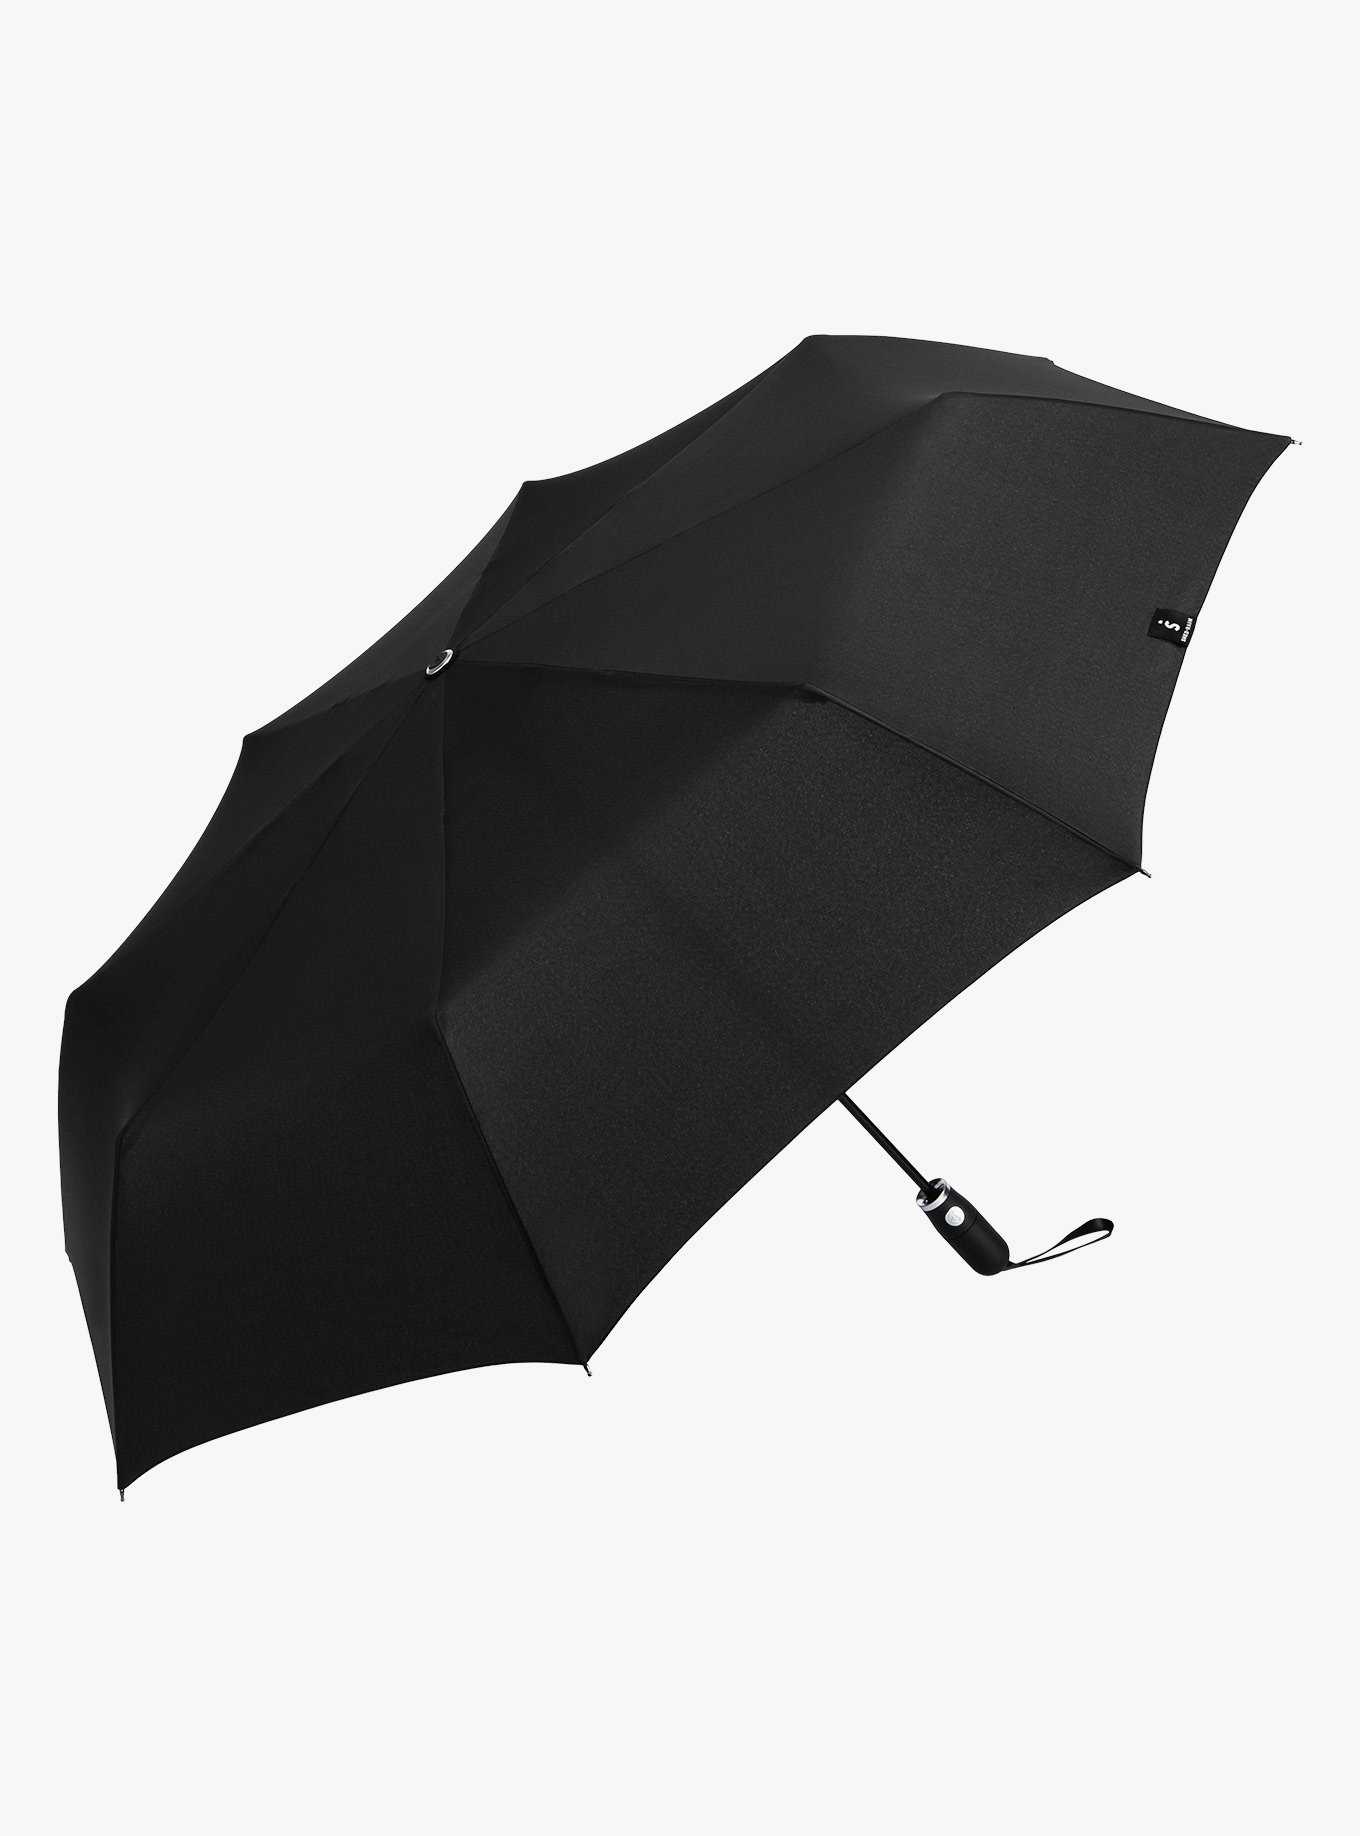 Jumbo Compact Umbrella Black, , hi-res